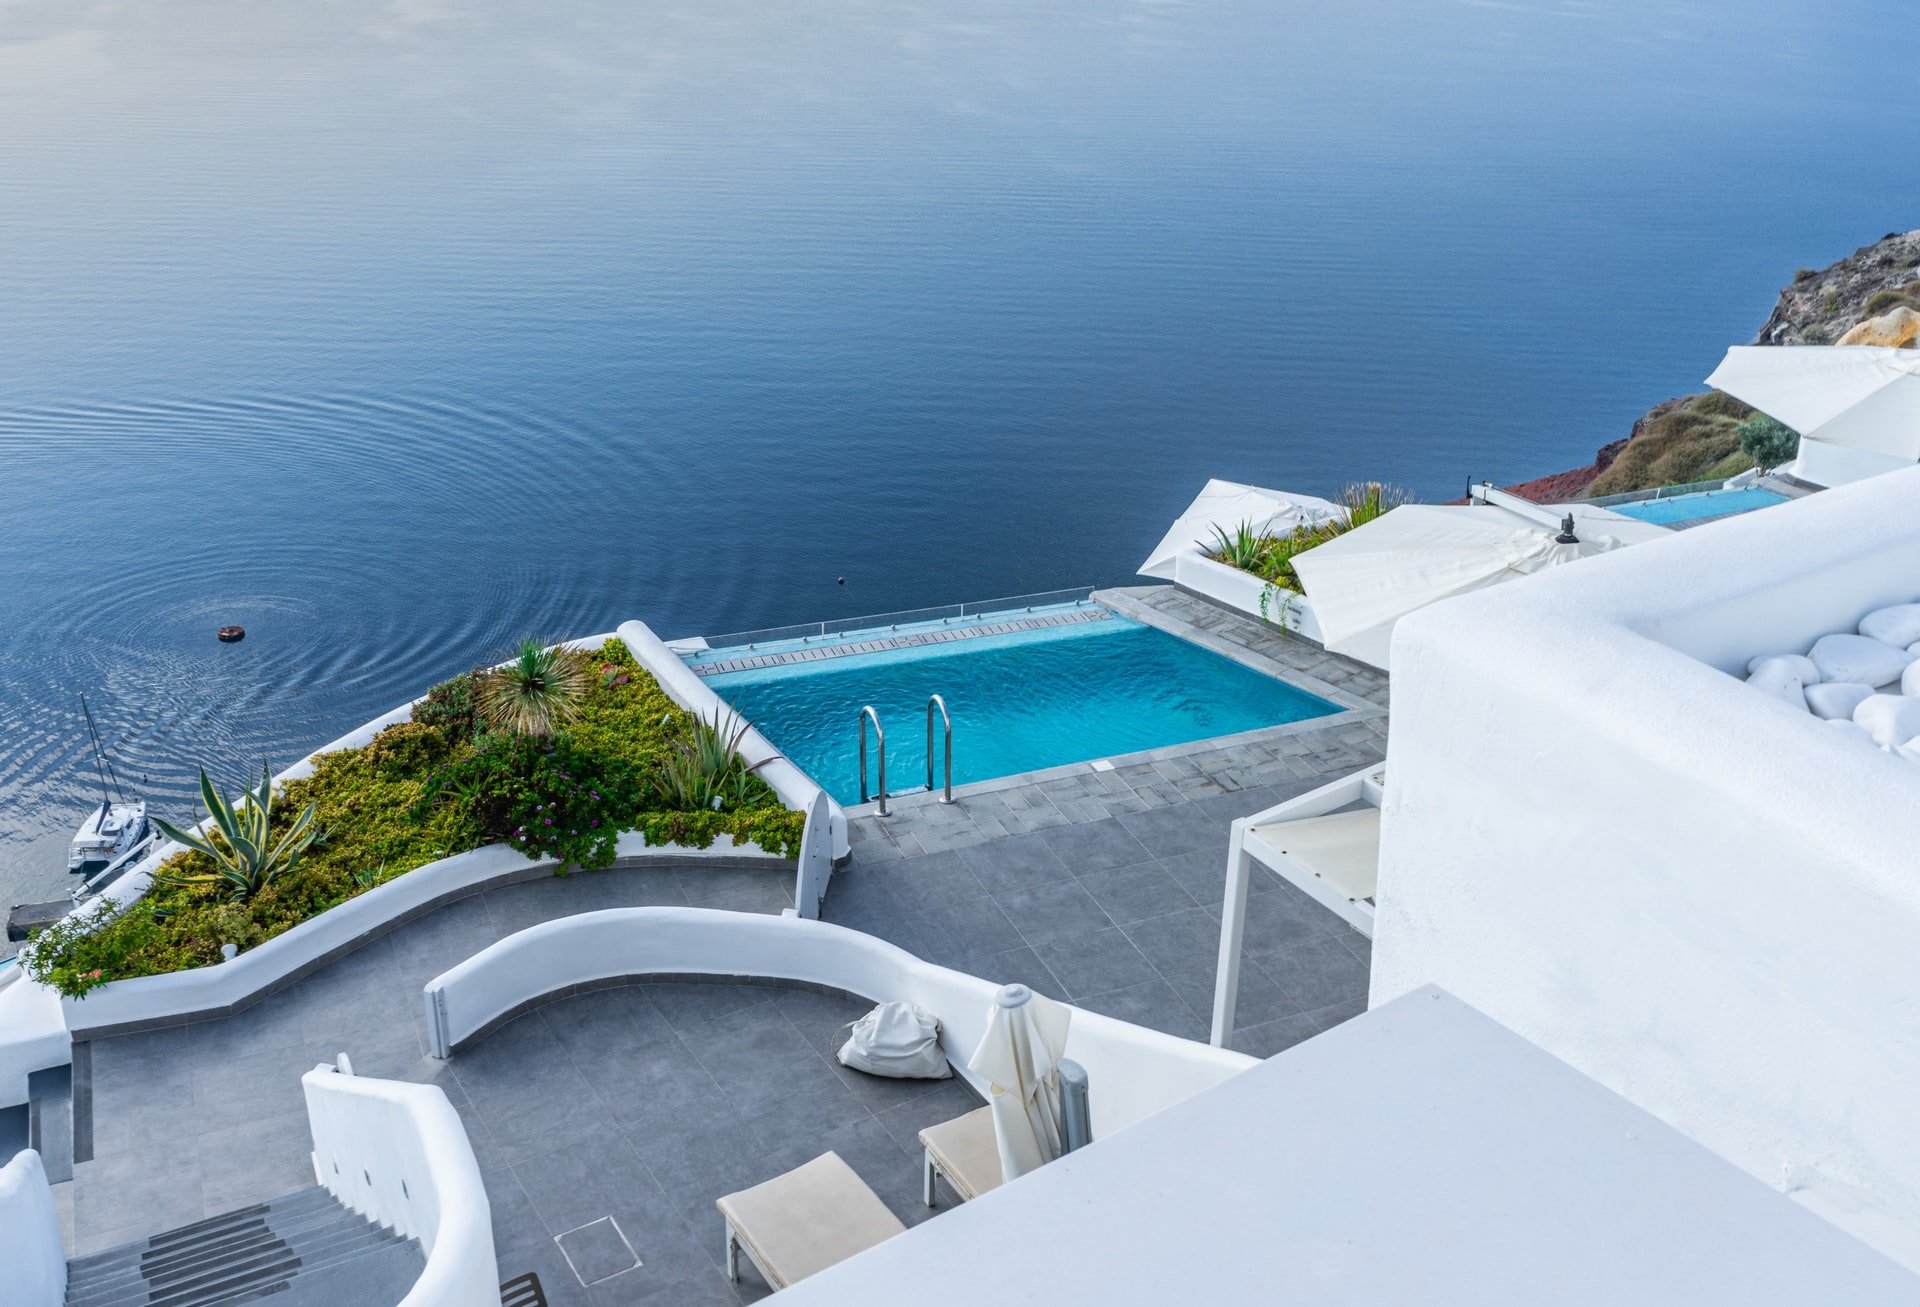 Découvrez nos séjours de luxe en vente privée - Santorin. VeryChic vous propose des voyages jusqu’à -70% dans les plus beaux hôtels du monde - Santorin